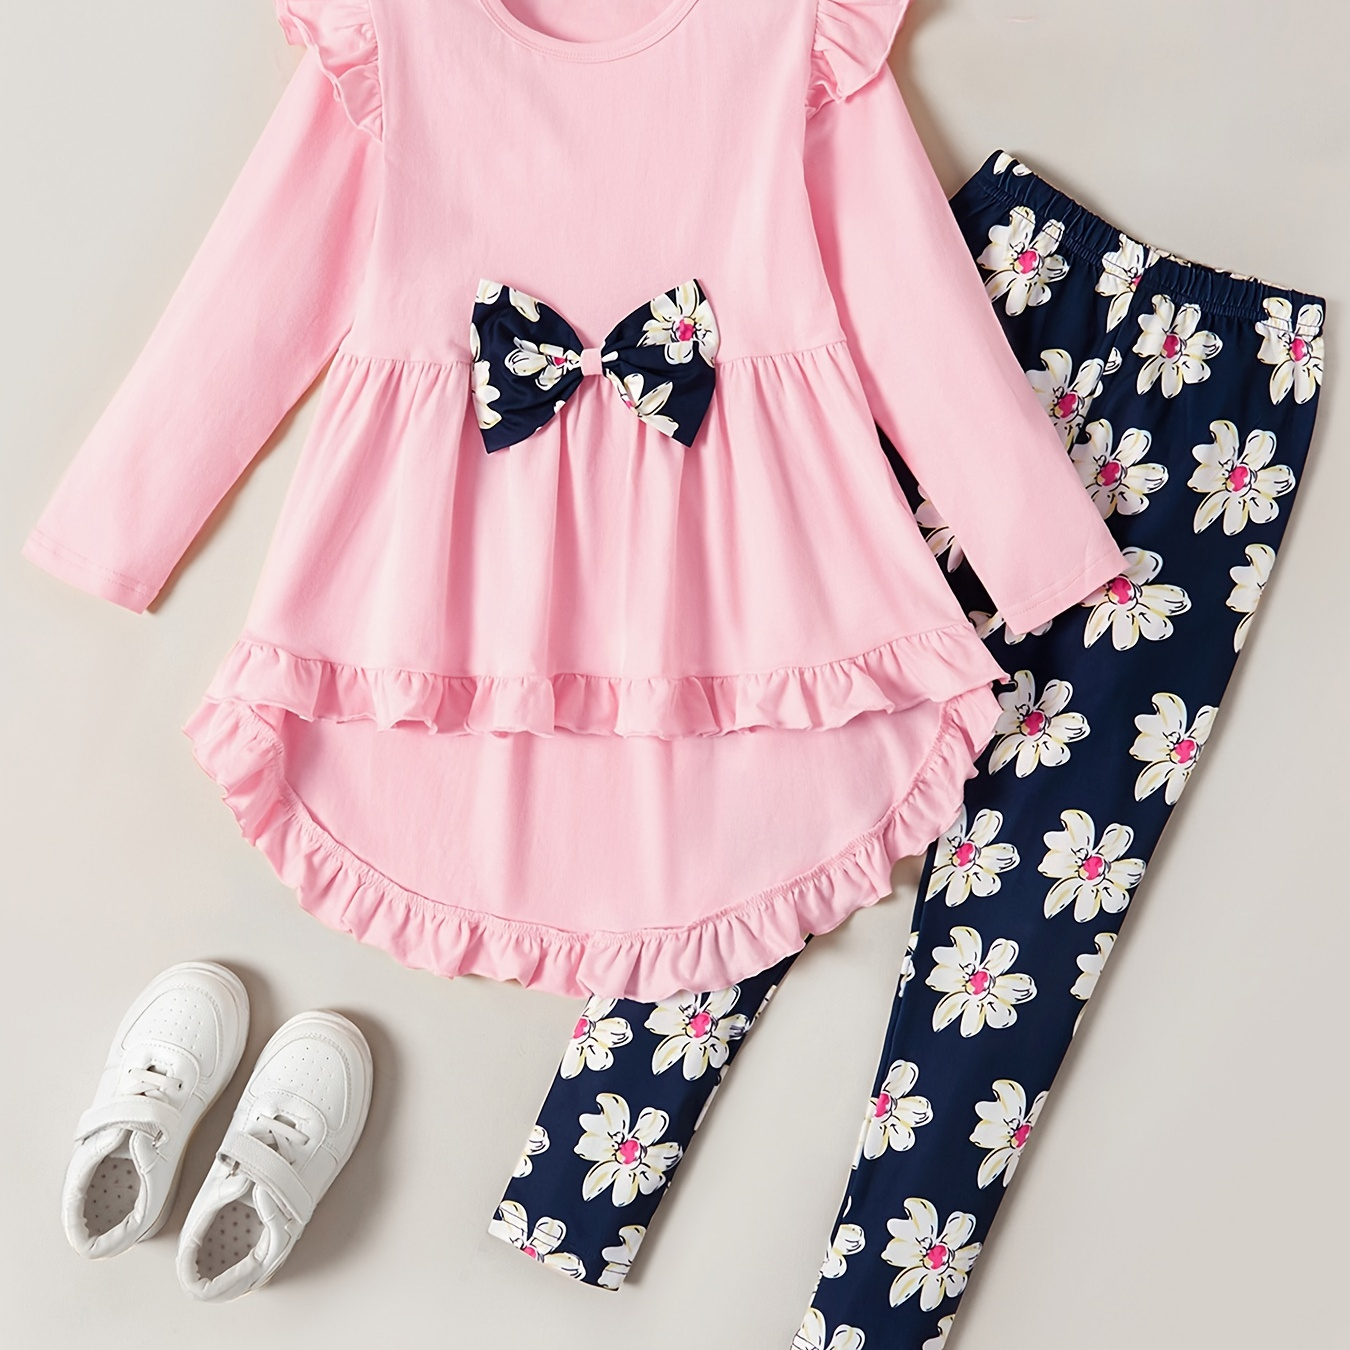 

2pcs Kid Girl Bowknot Design Peplum Top & Floral Print Leggings Set